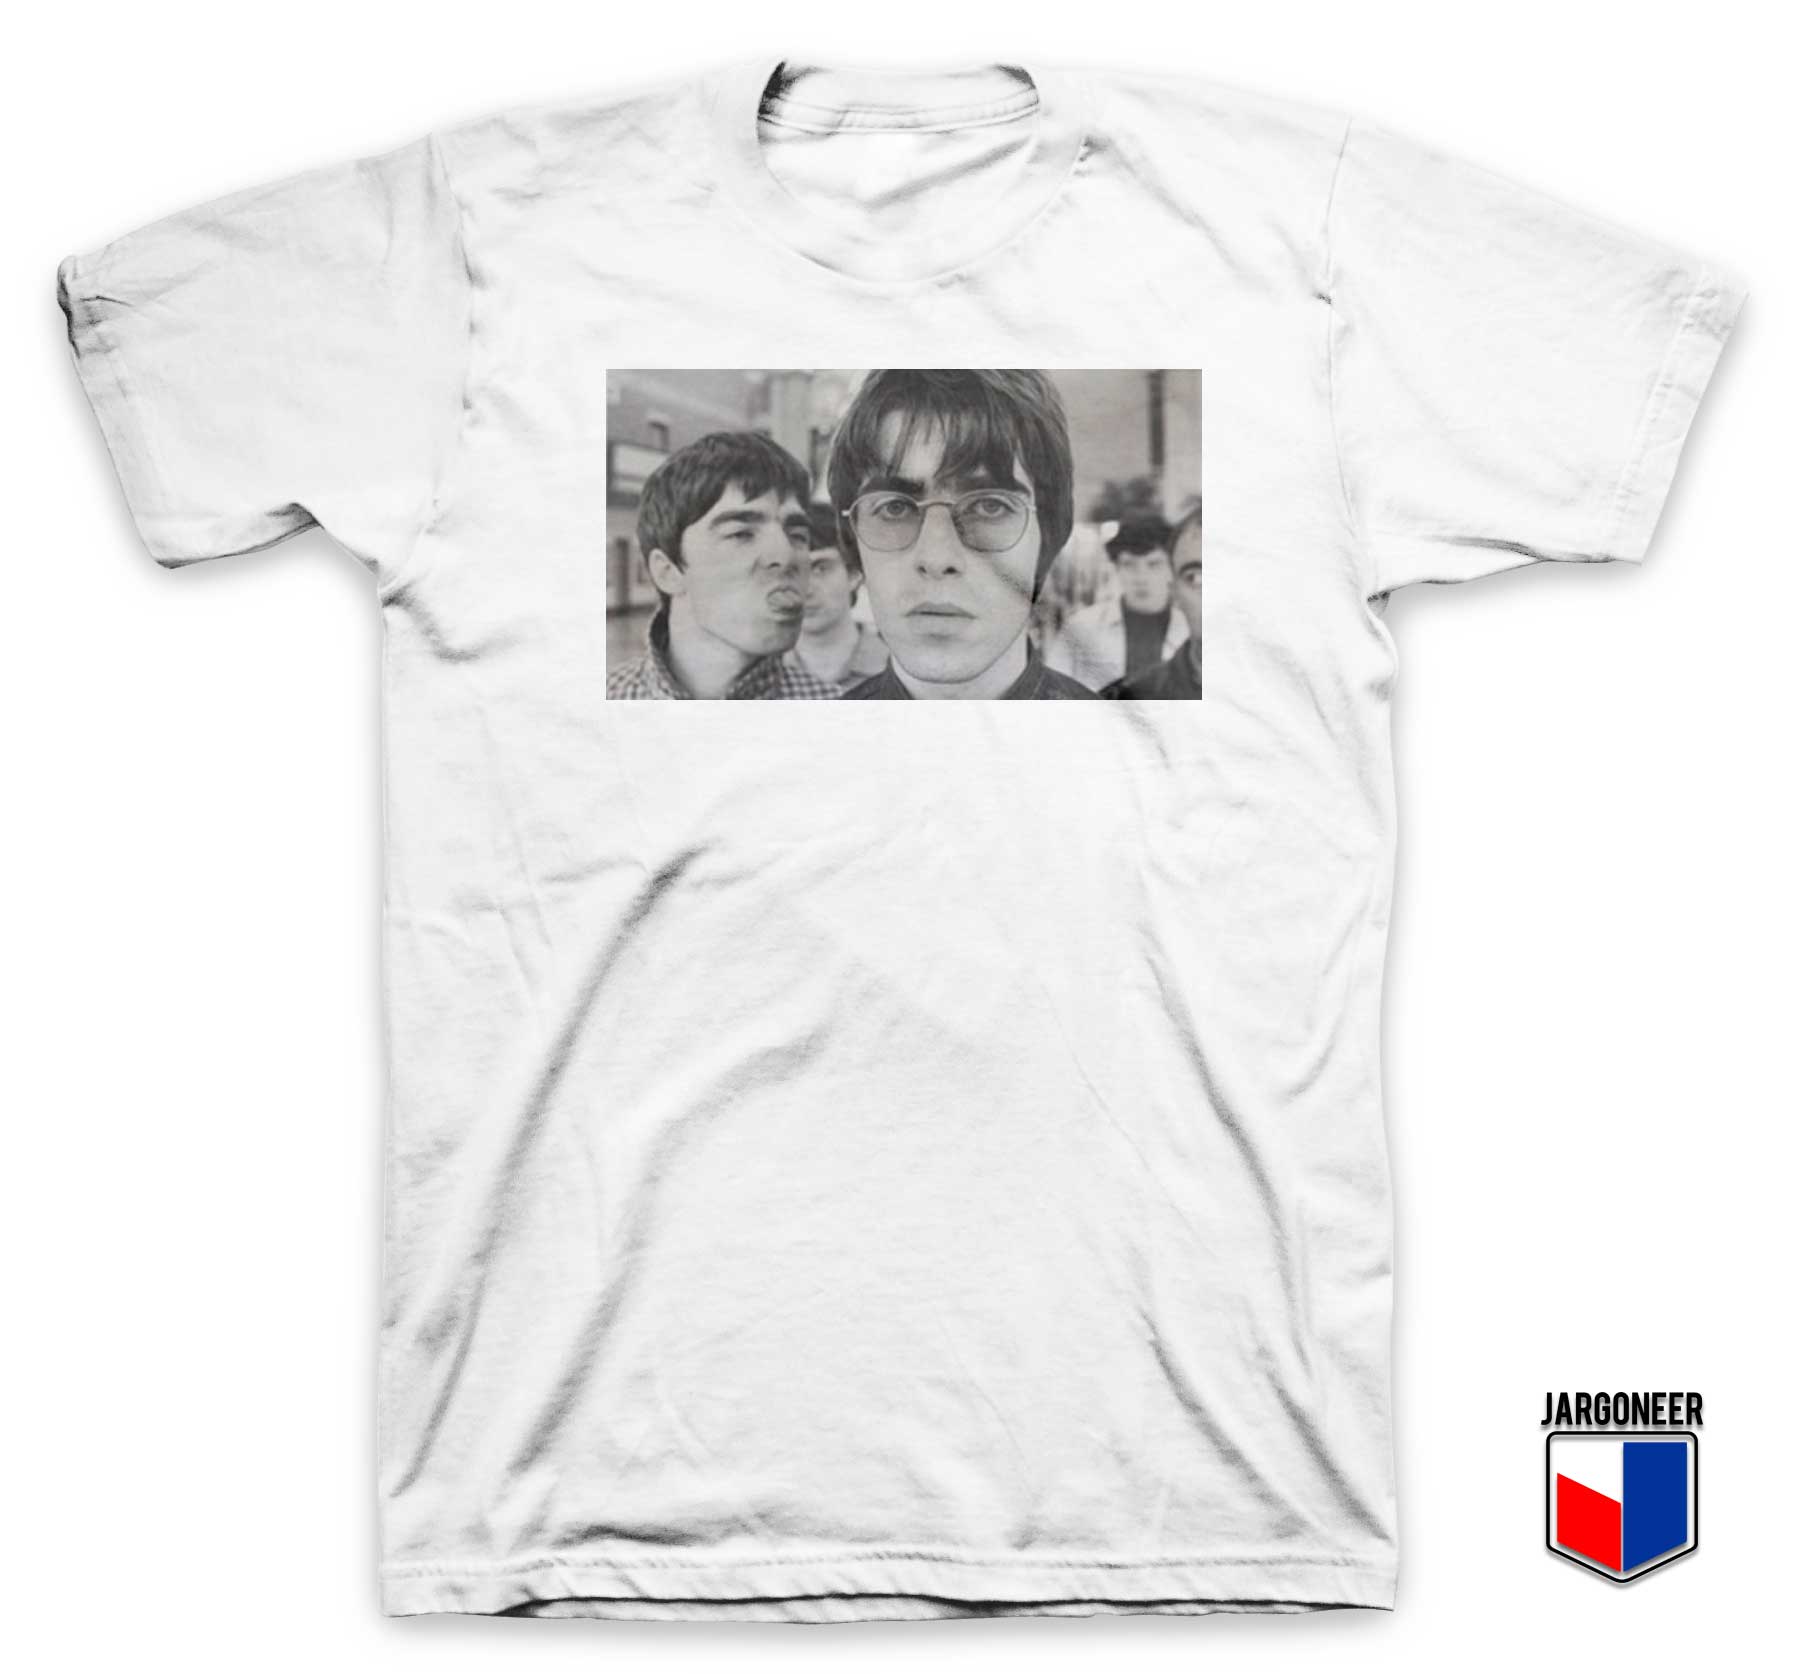 Oasis Band T Shirt - Shop Unique Graphic Cool Shirt Designs